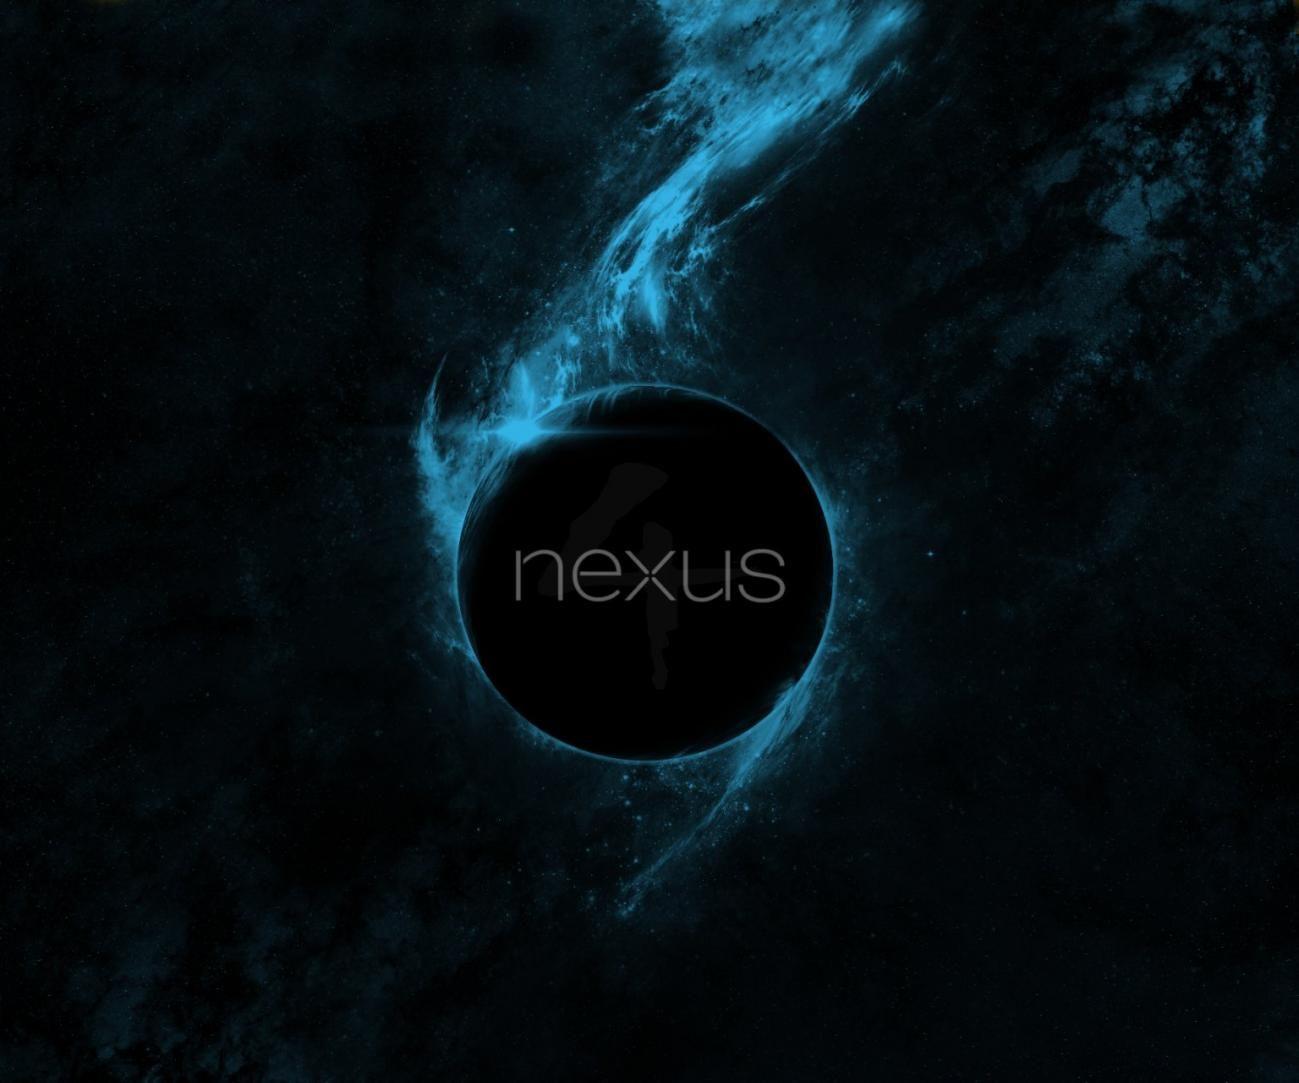 Nexus HD Wallpaper. Best Image Background